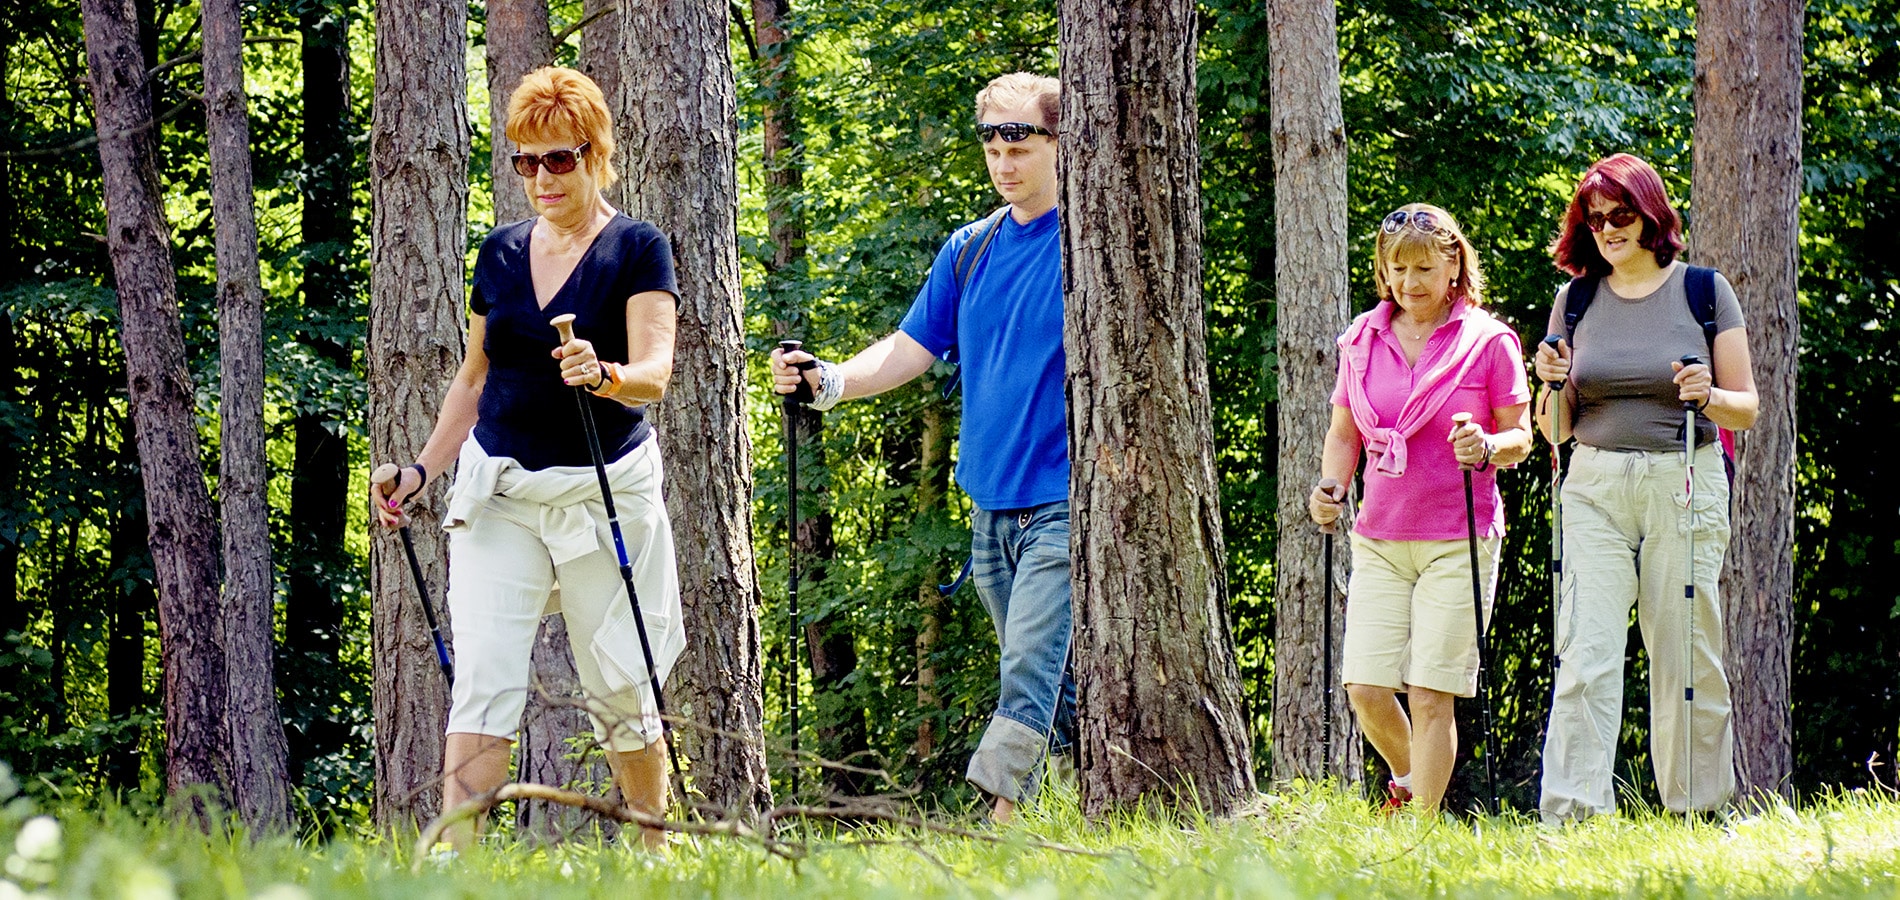 Ryhmä ihmisiä sauvakävelee metsässä.